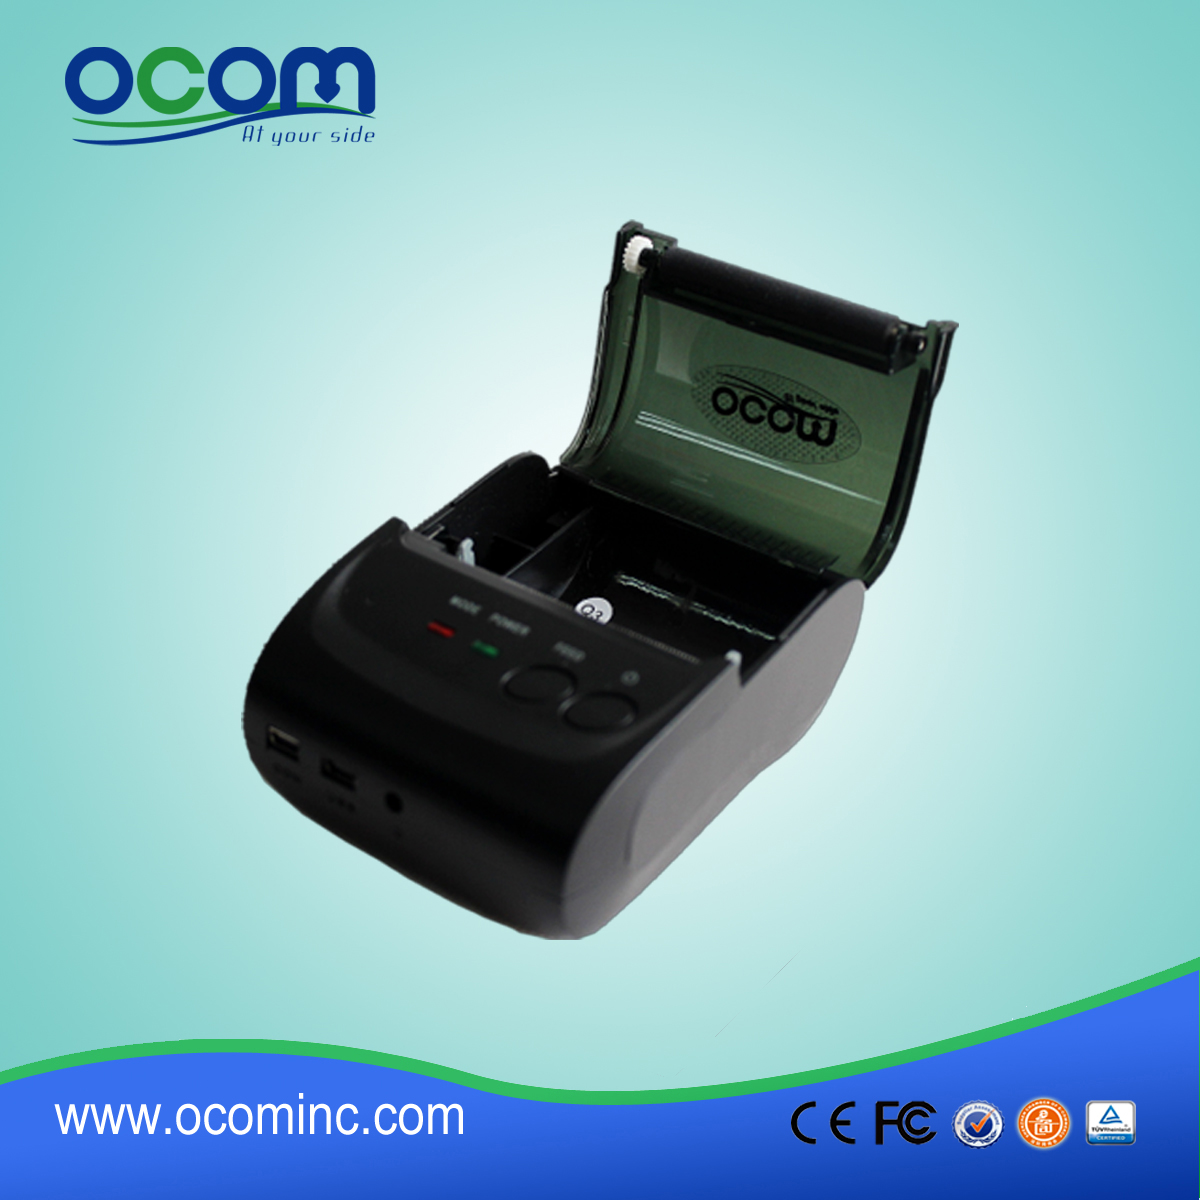 OCPP-M05: 2 "Handheld-Batterie betrieben Android kompatiblen Bluetooth-Thermodrucker